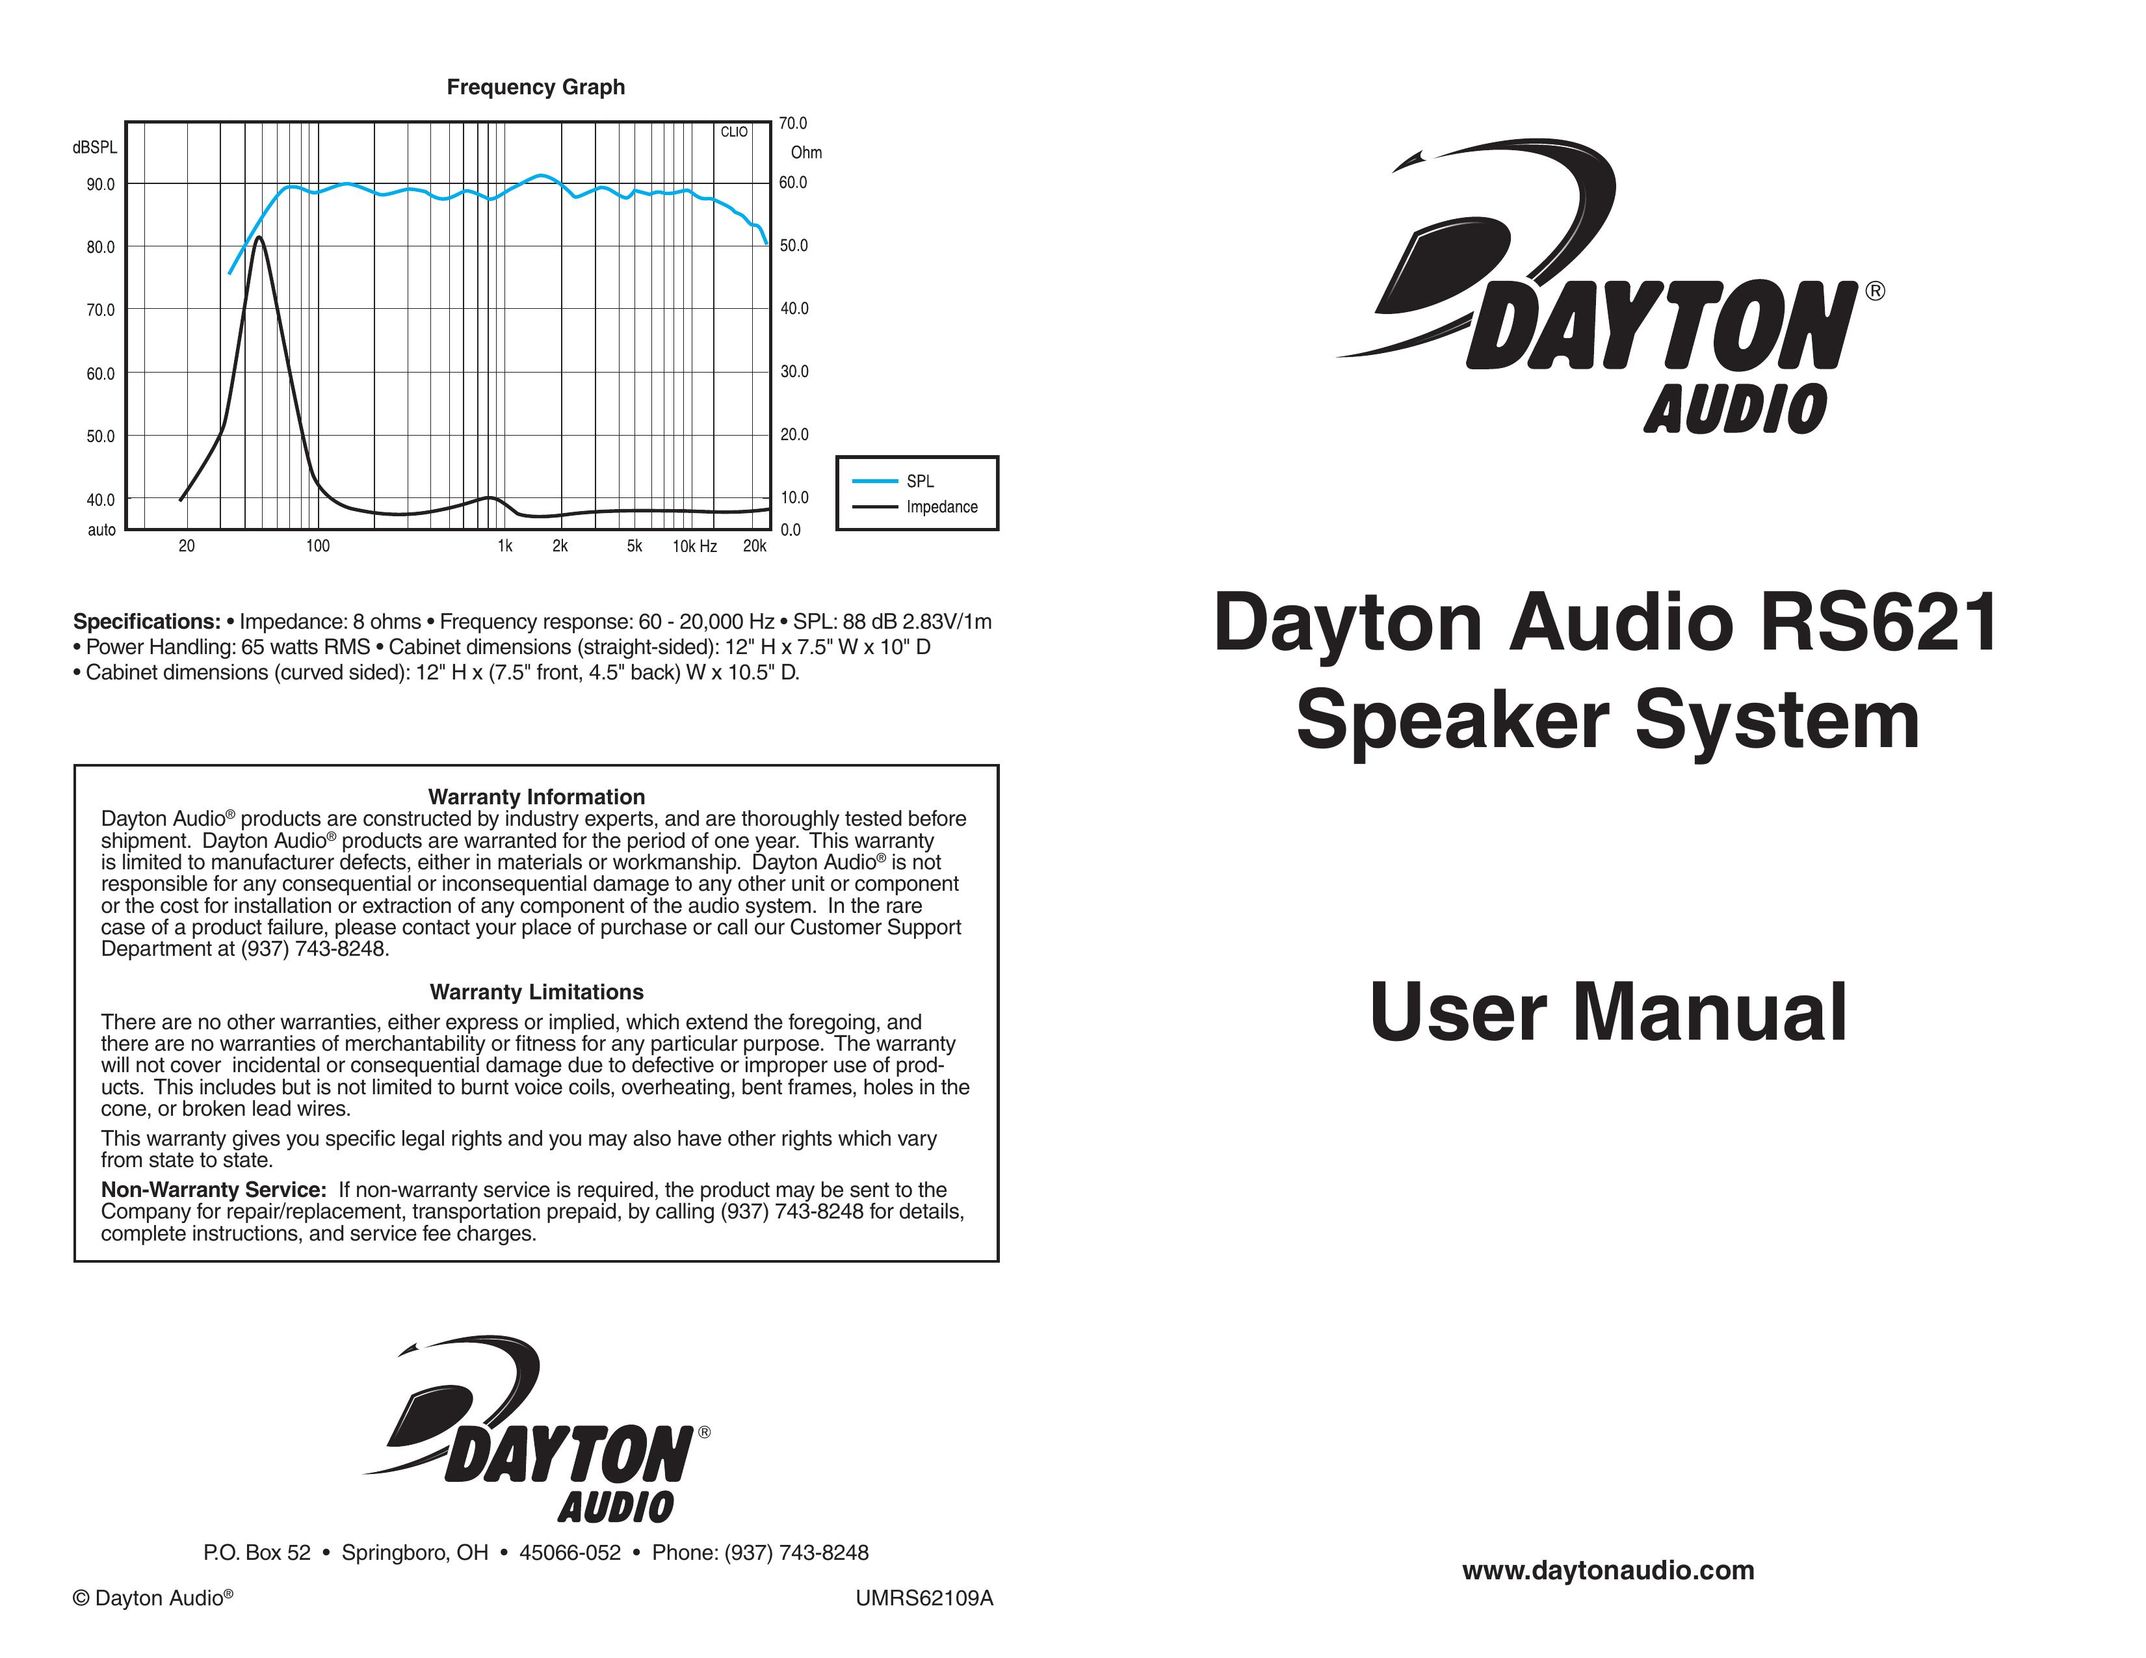 Dayton Audio RS621 Car Speaker User Manual